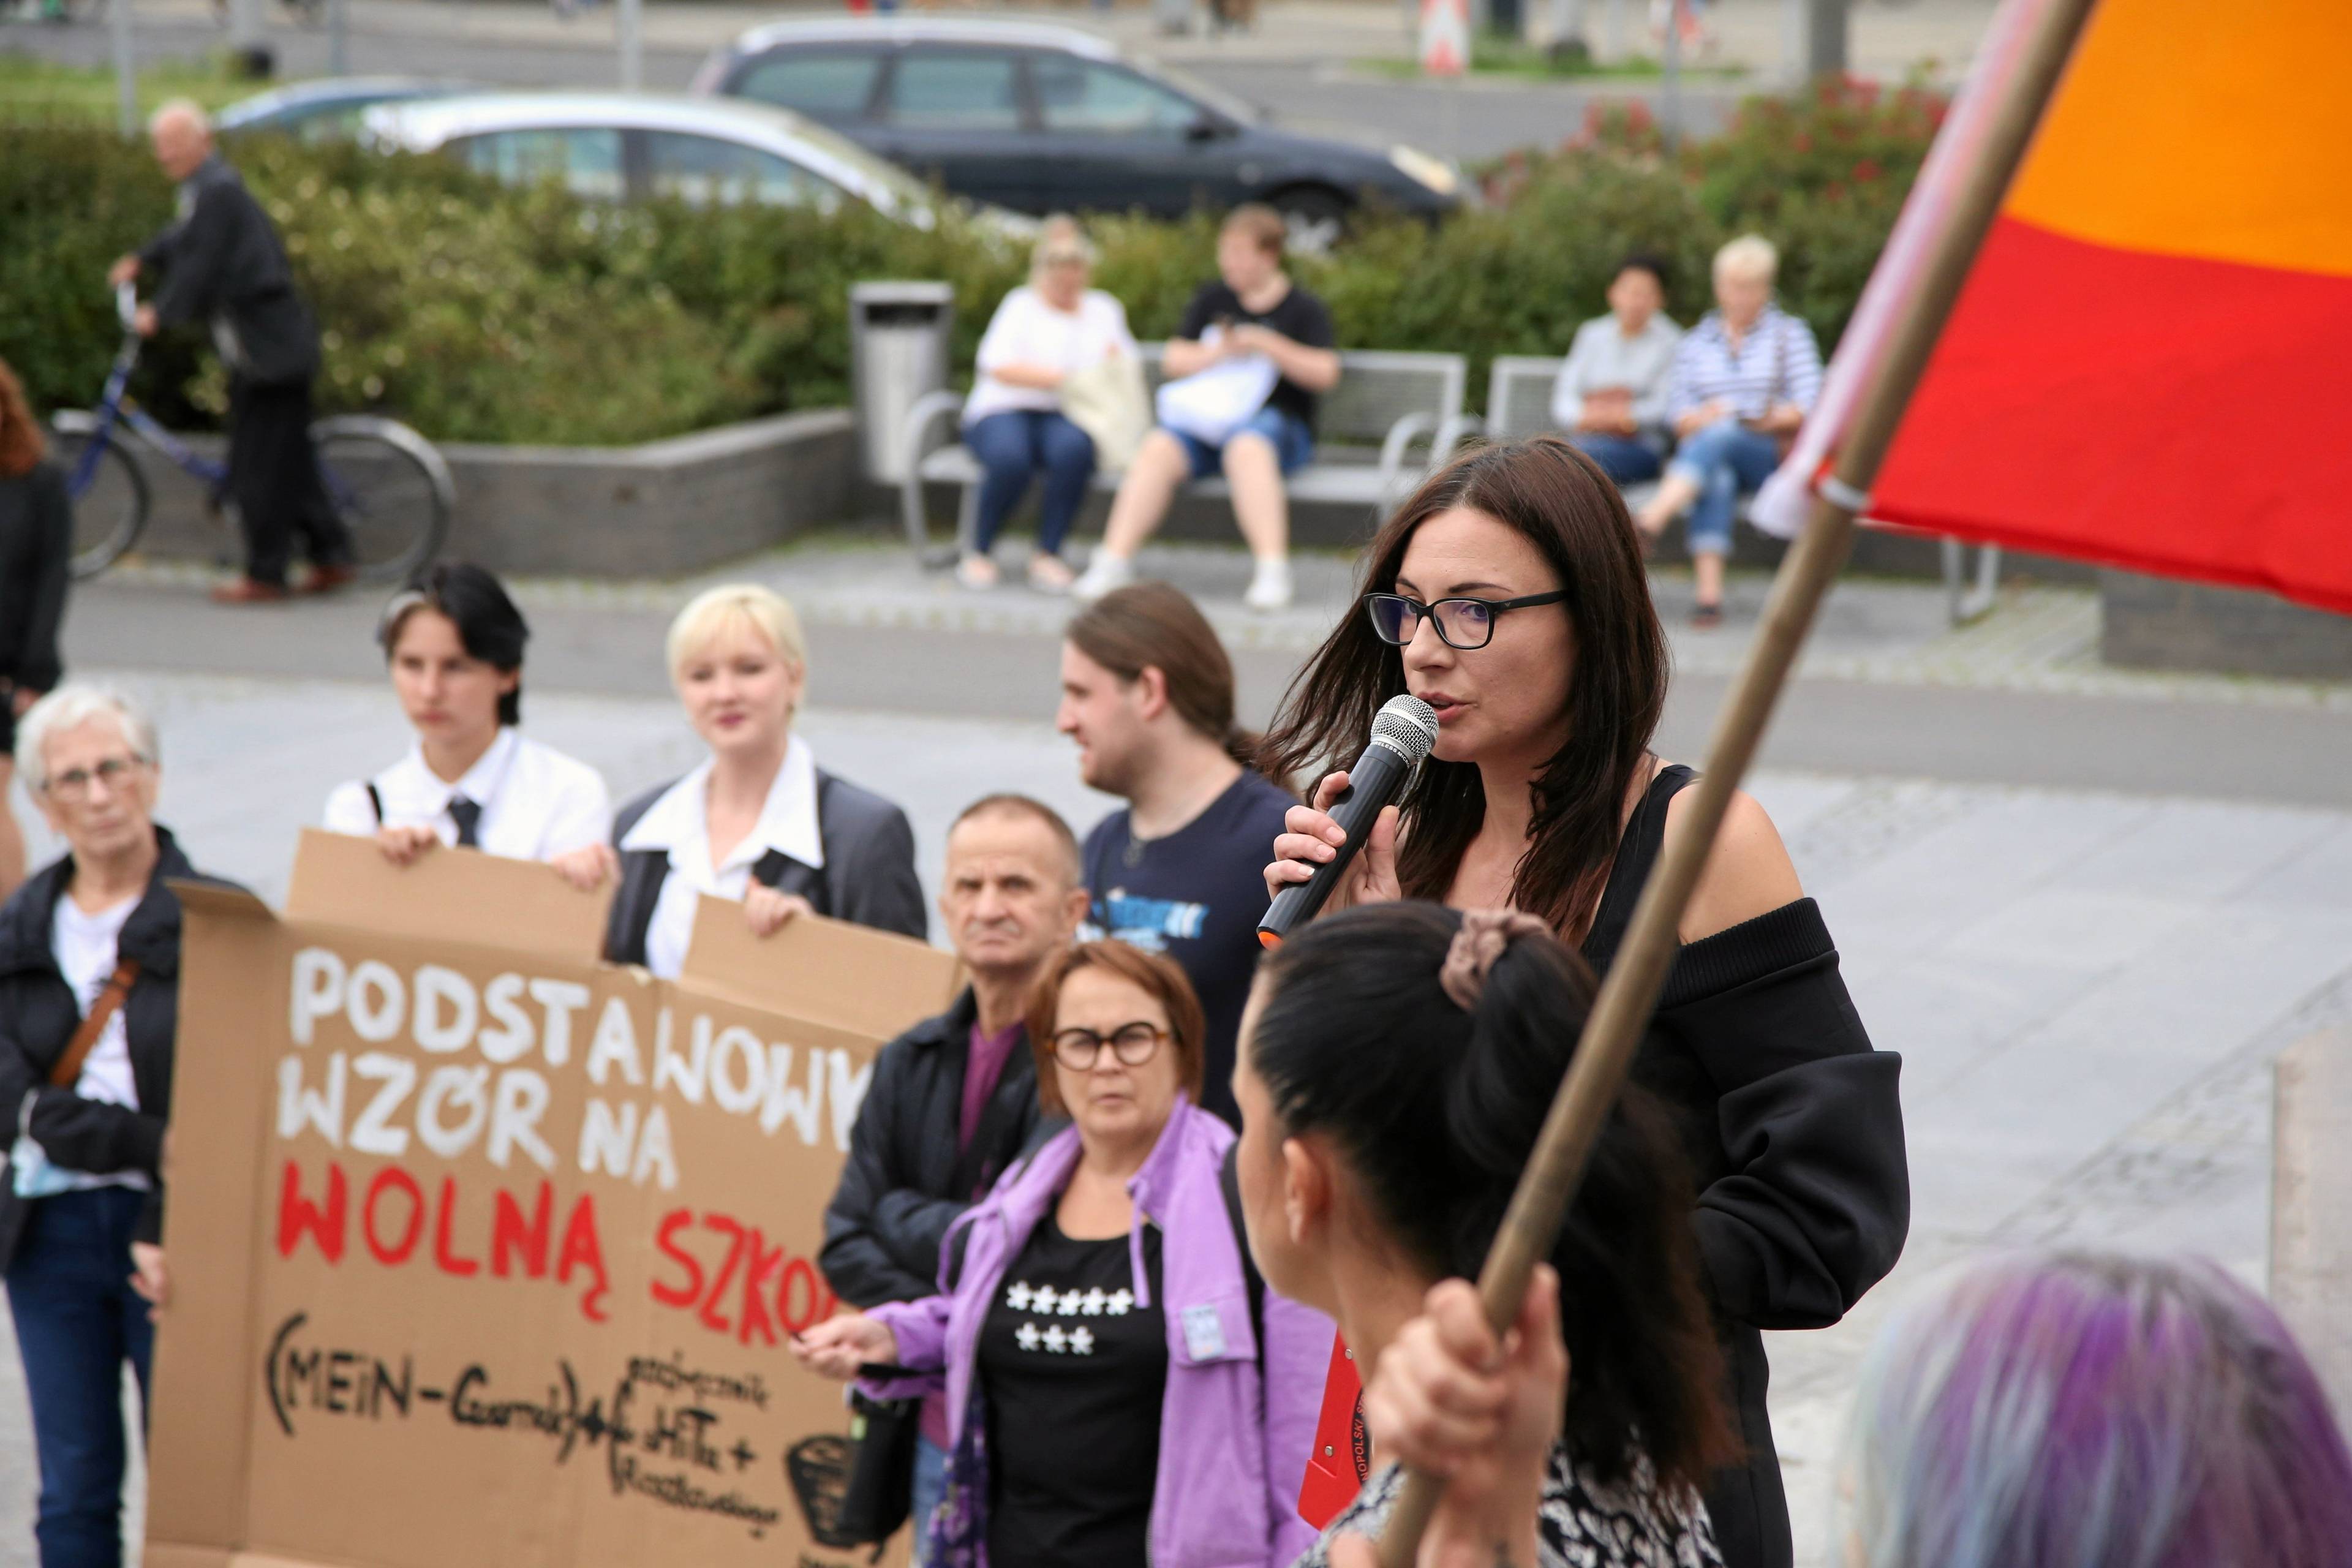 Demonstracja, na pierwszym planie kobieta przemawia przez mikrofon, w tle demonstranci trzymają karton z hasłem Podstawowy wzór na wolną szkołę